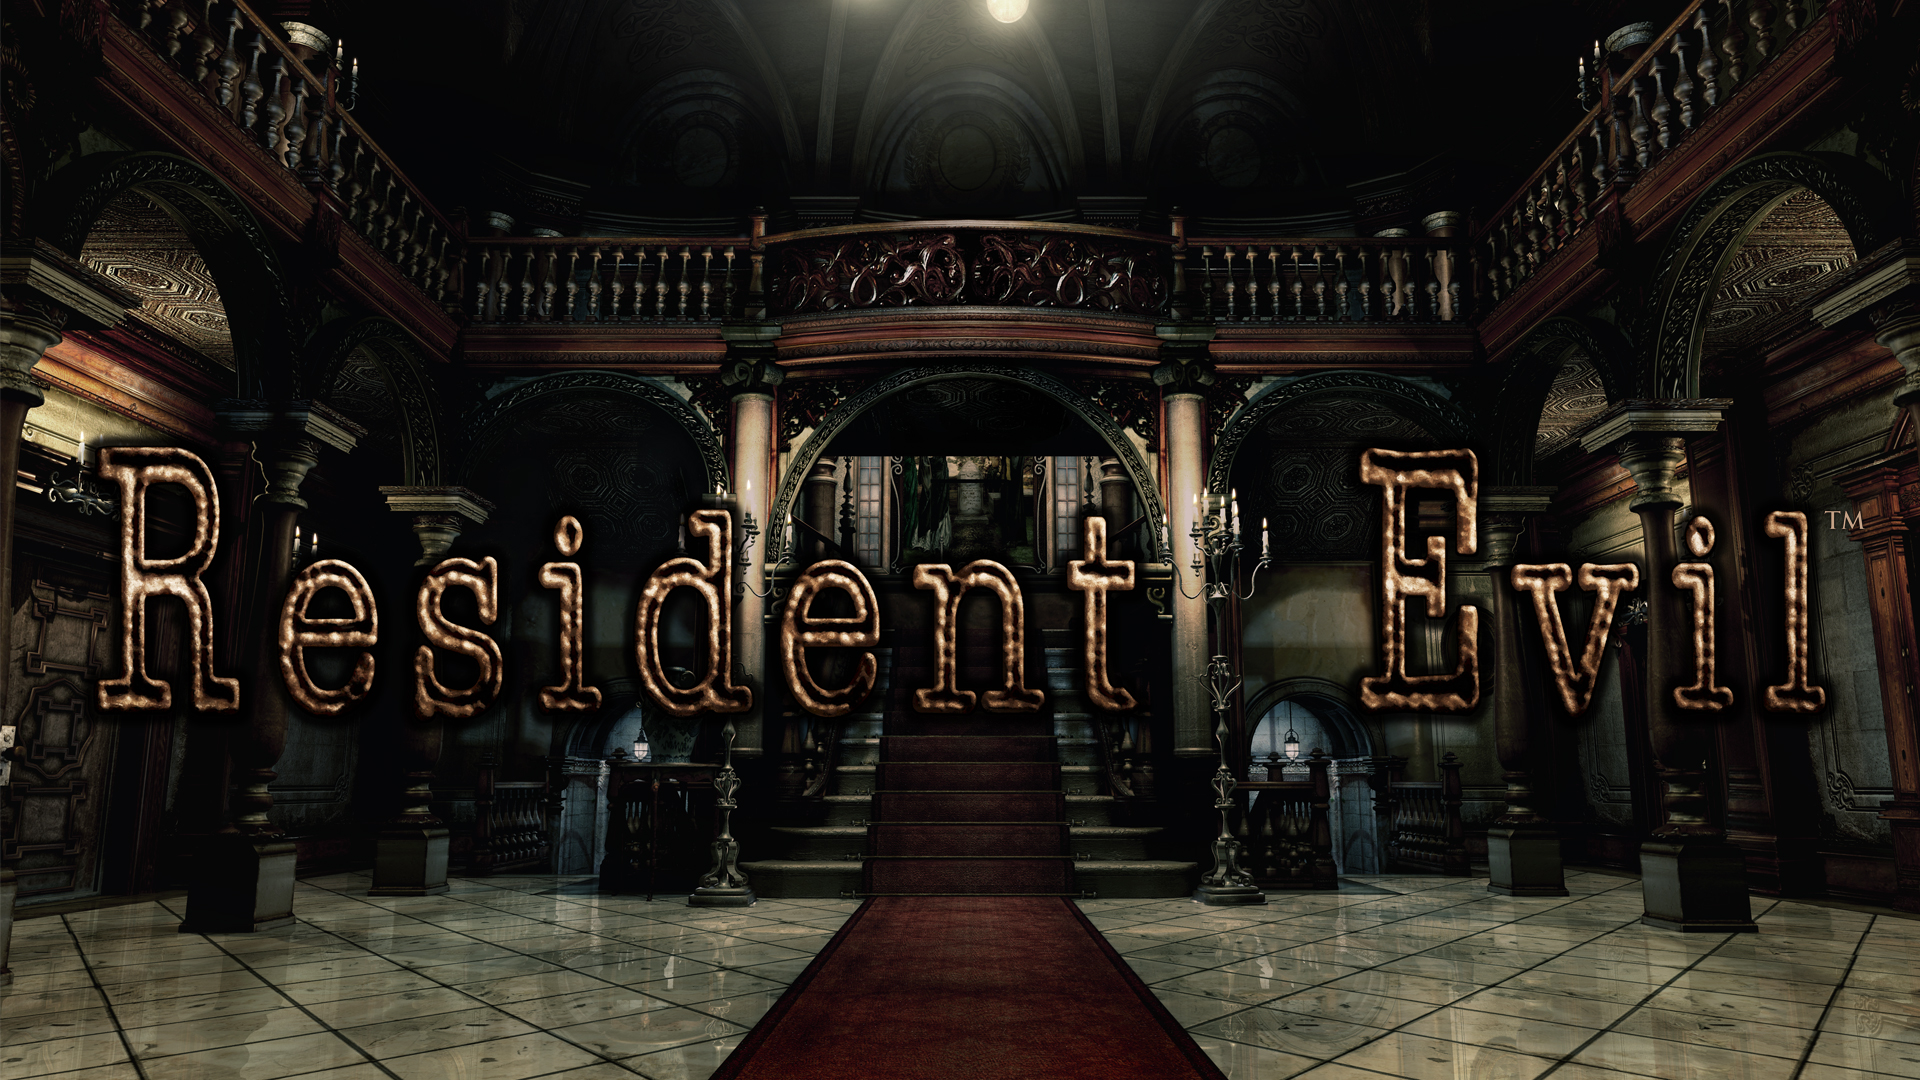 Retro Review: Resident Evil